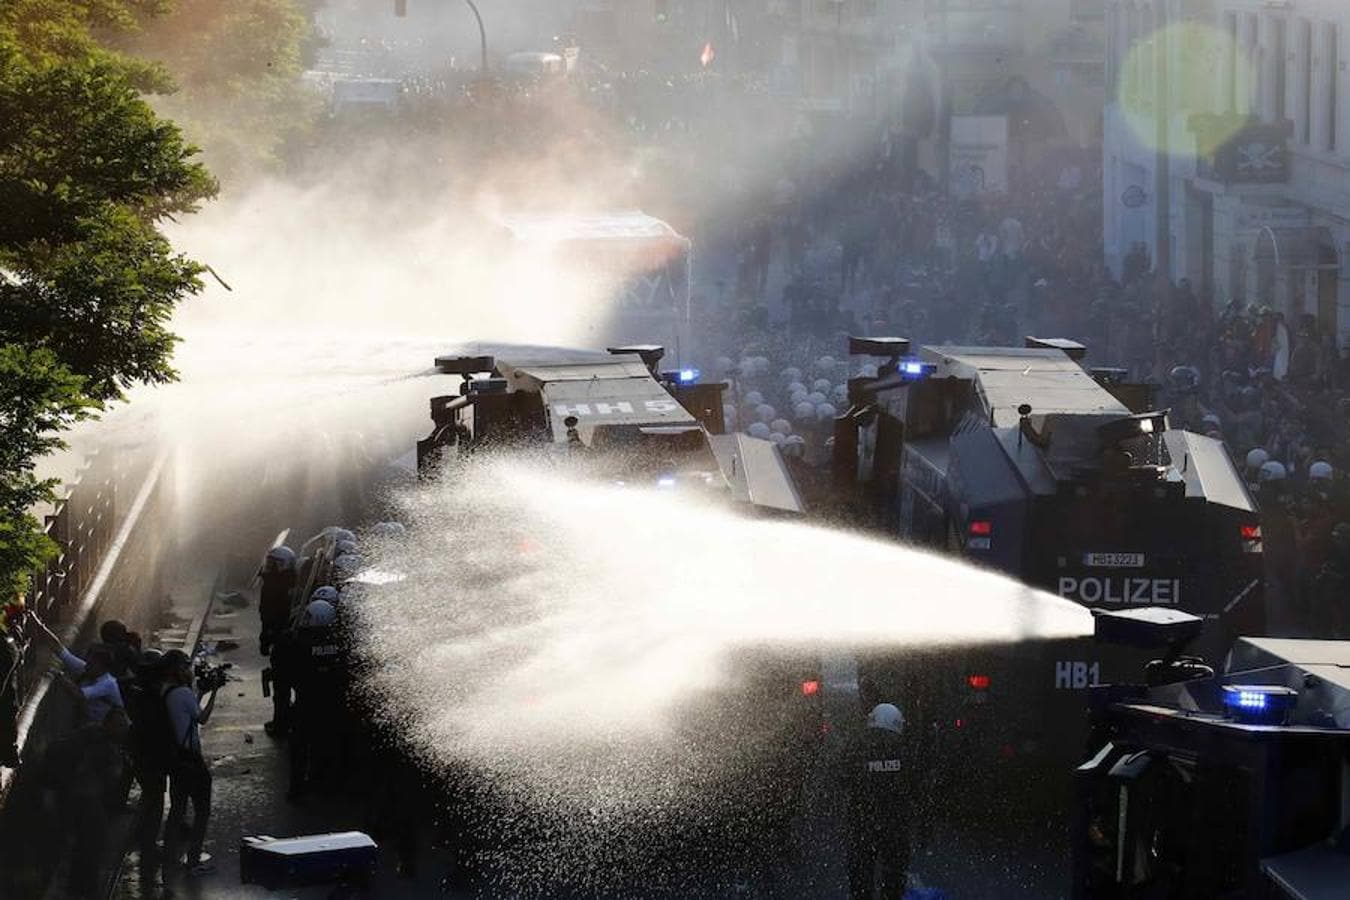 Las fuerzas de seguridad se han servido de chorros de agua a presión para dispersar a los manfestantes.